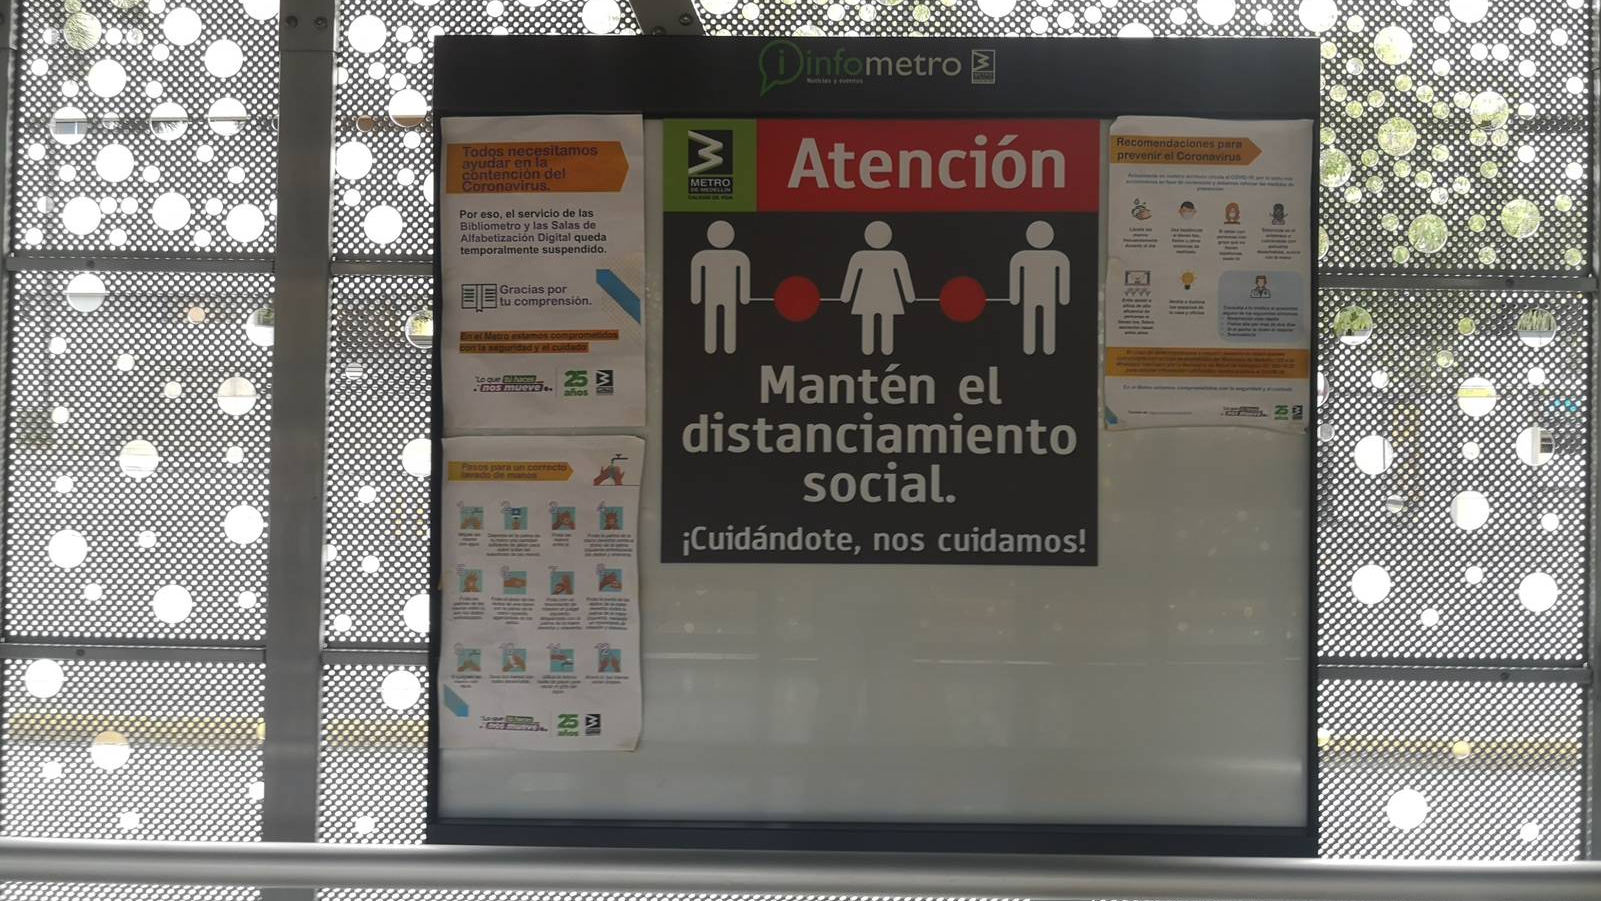 Информация о социальной дистанции в метро Колумбии